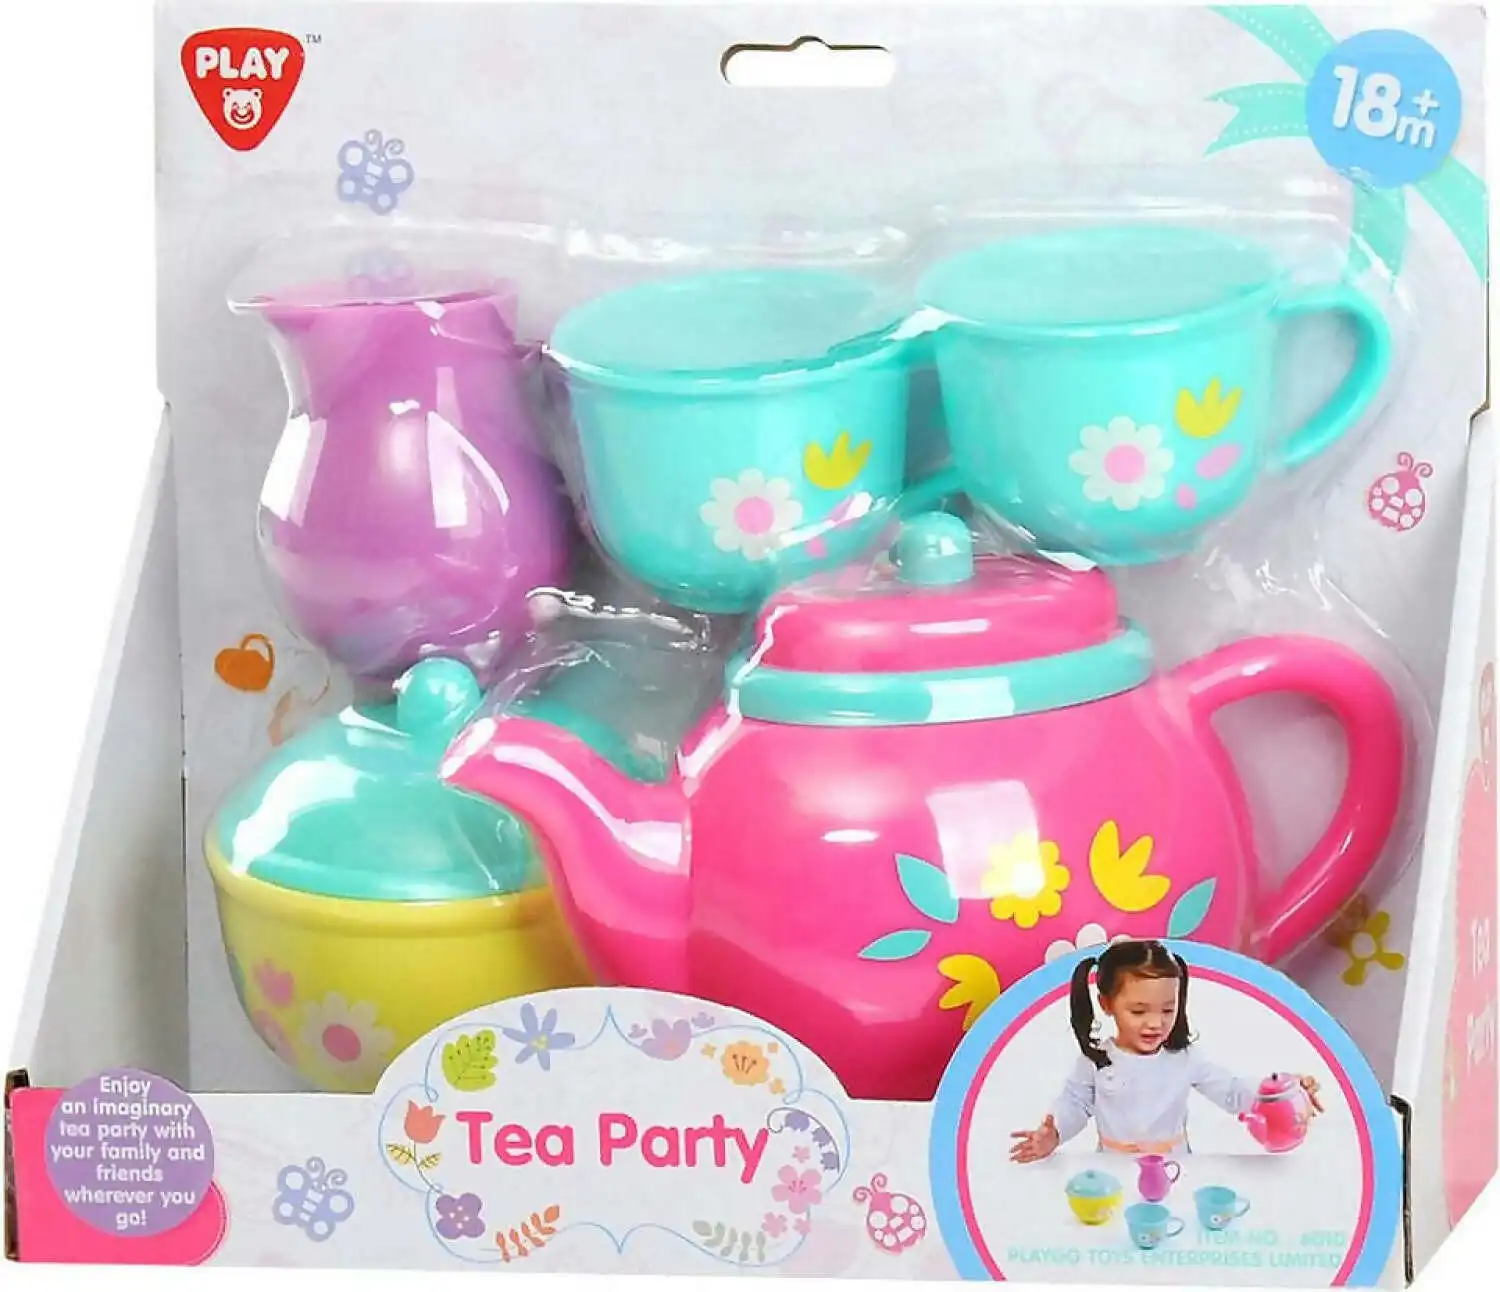 Playgo Toys Ent. Ltd. - Tea Party Set